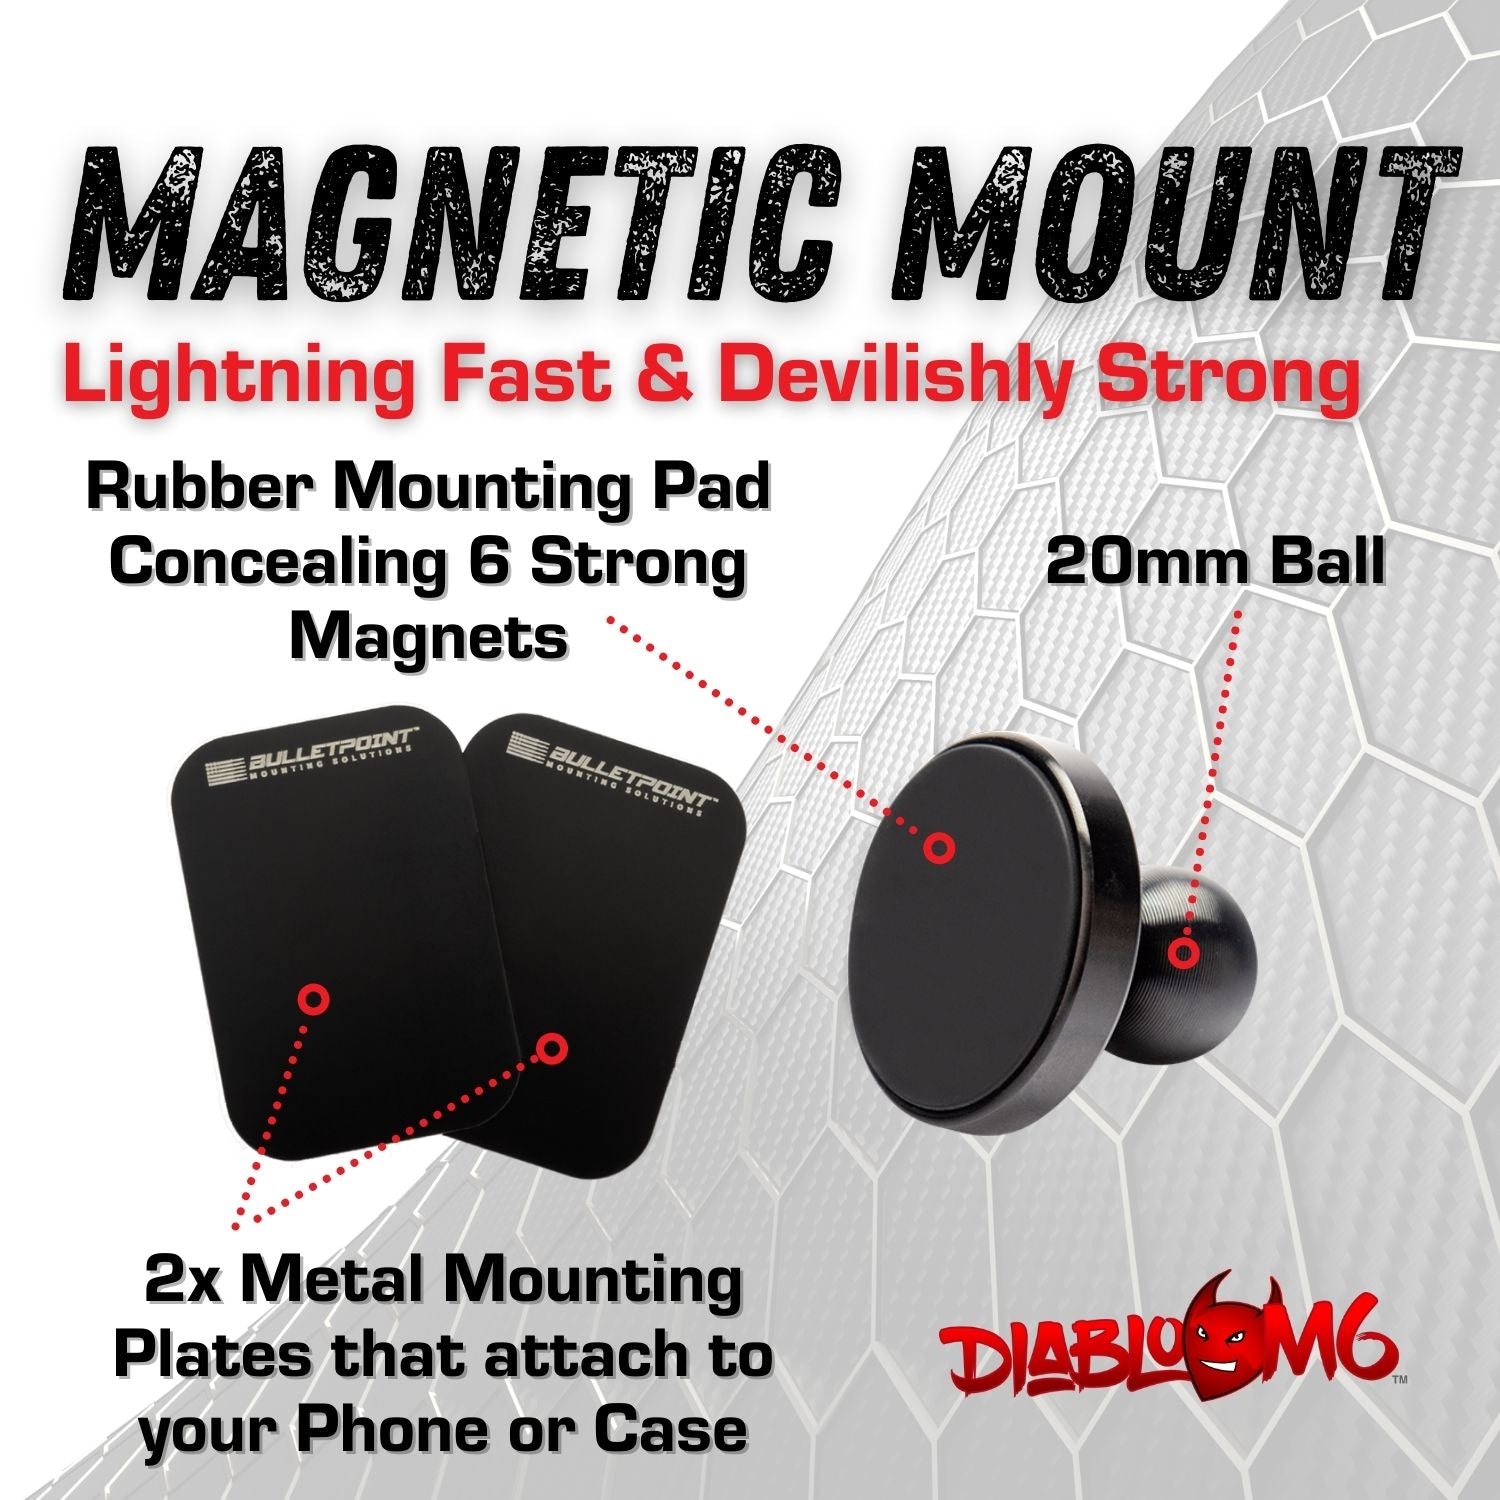 Carbon Fiber/Kevlar Arm and DiabloM6 Magnetic Phone Mount Holder Combo